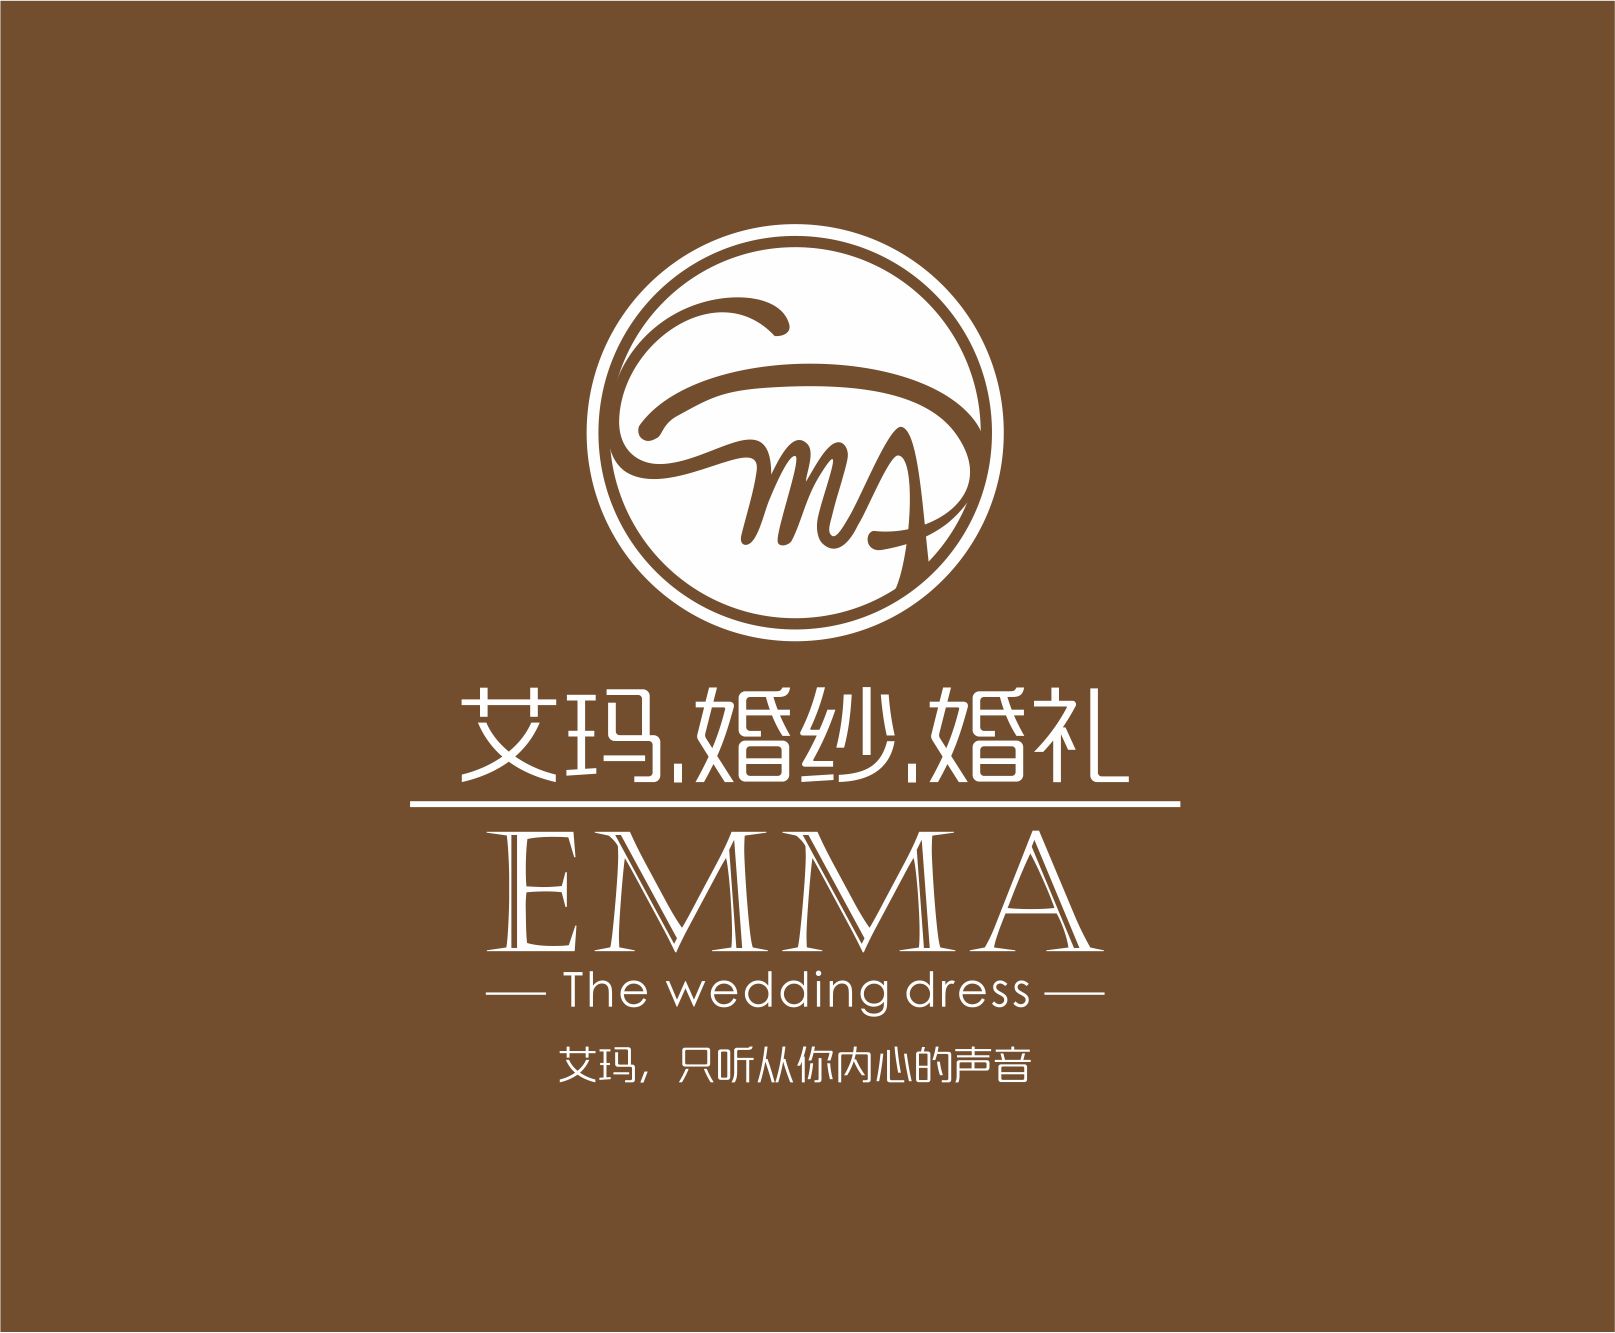 EMMA WEDDING